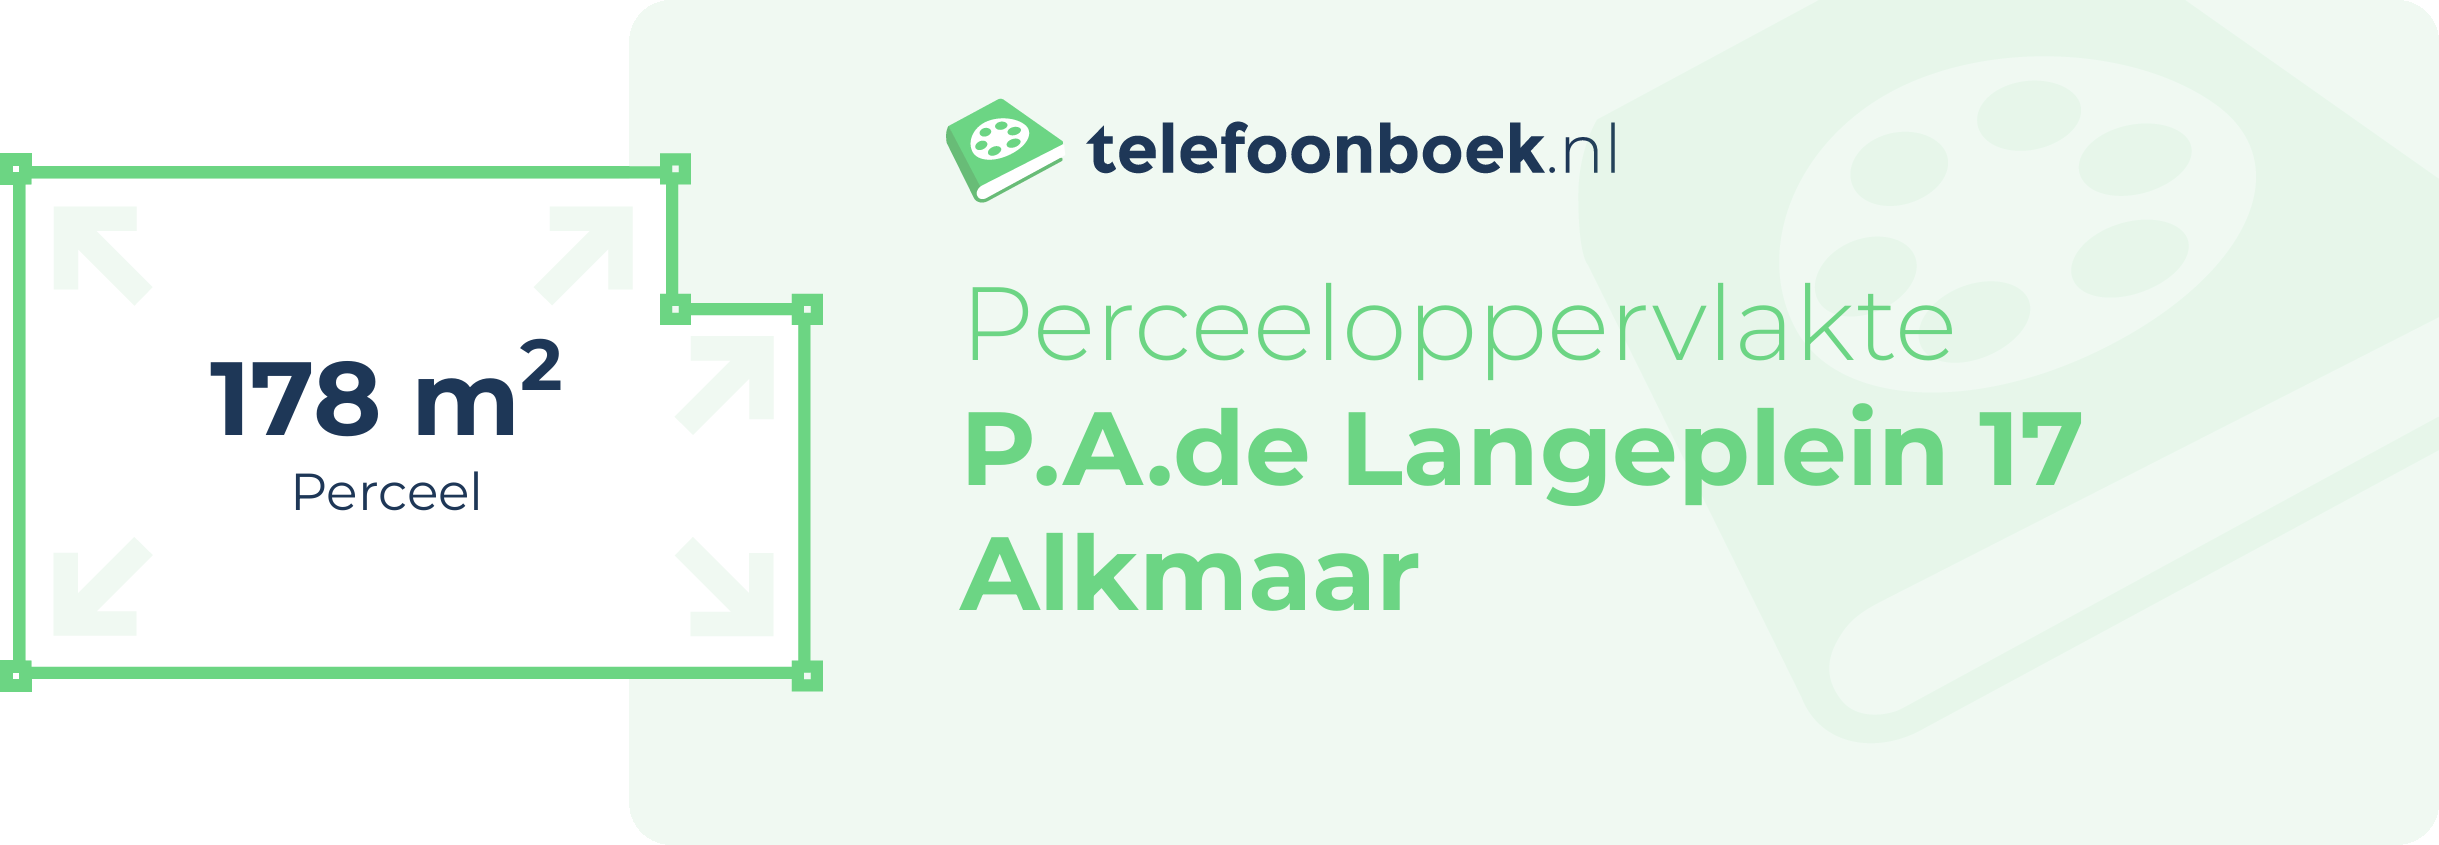 Perceeloppervlakte P.A.de Langeplein 17 Alkmaar